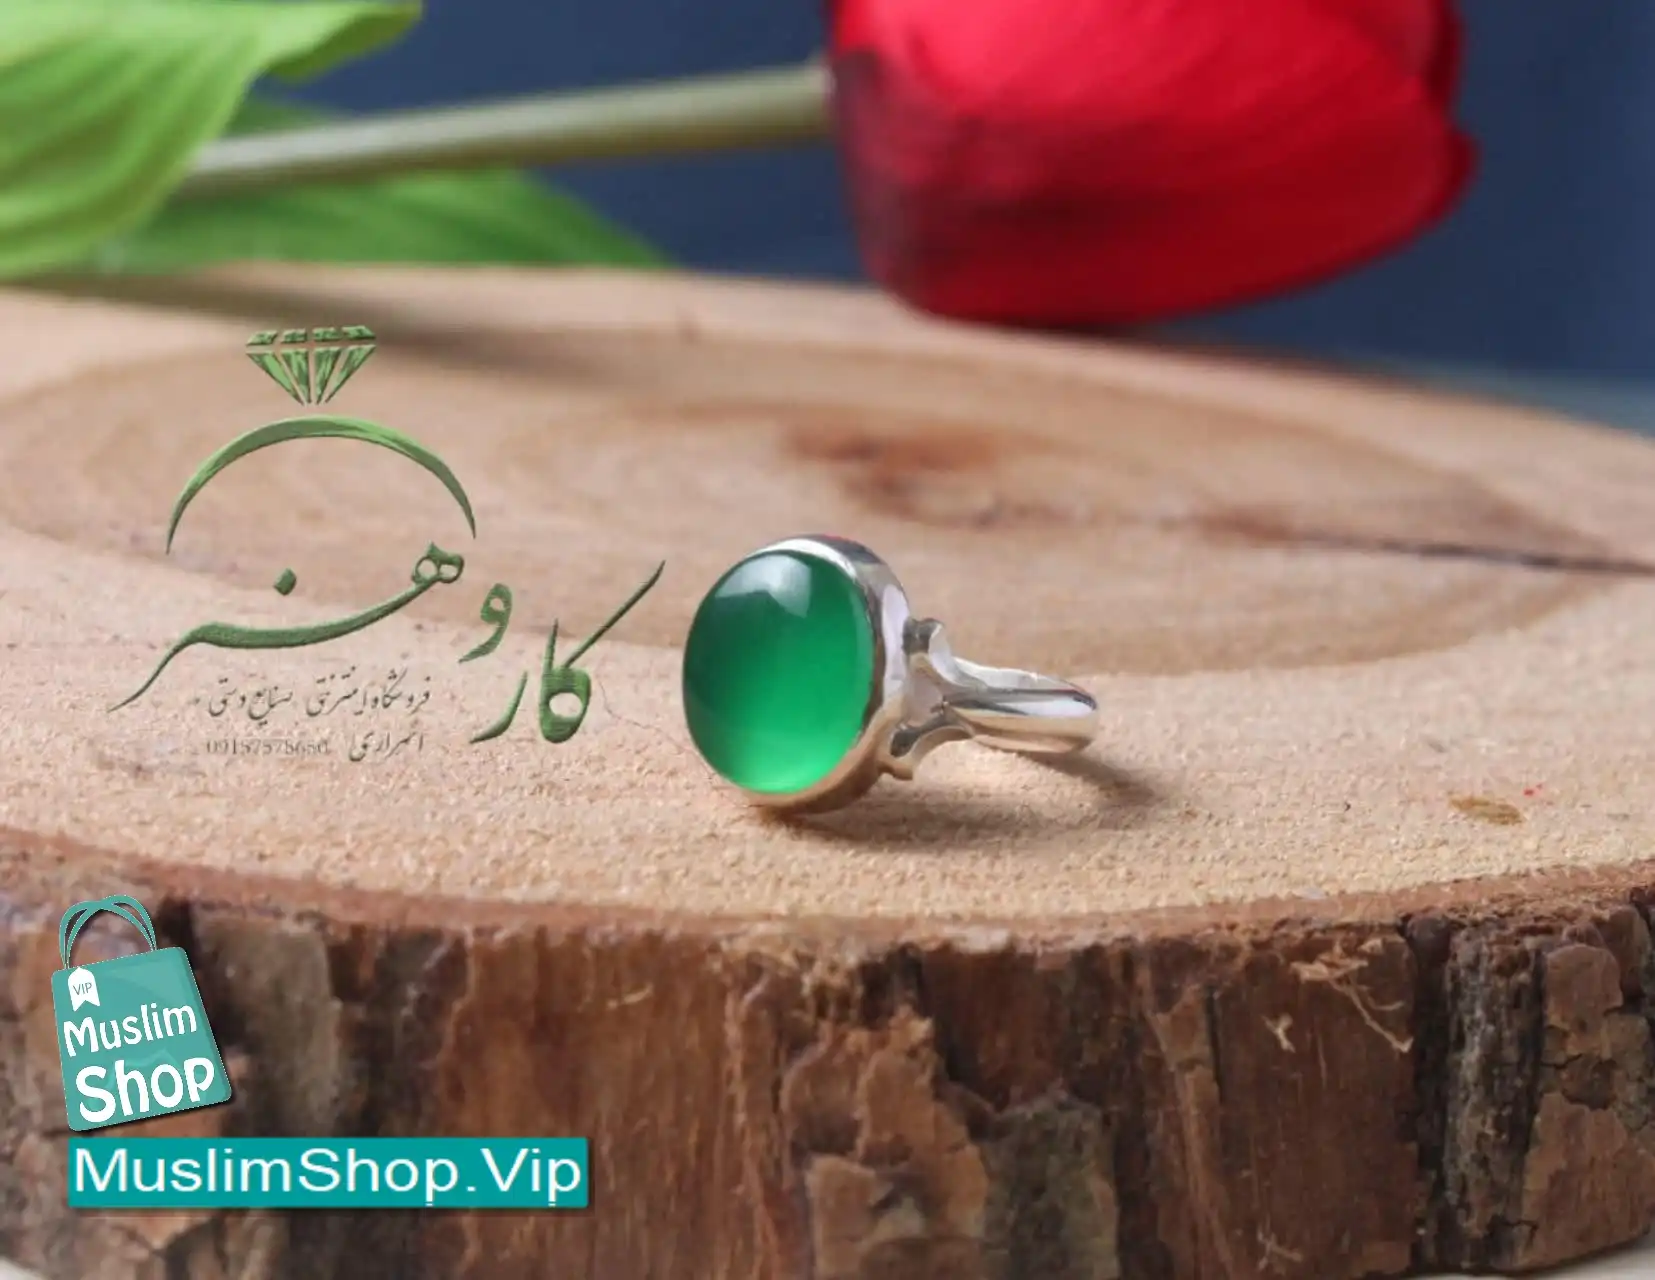 MuslimShop-Ring-Muslim-sterling-silver-gemstone-Akik-emrald-agate-Green-Woman